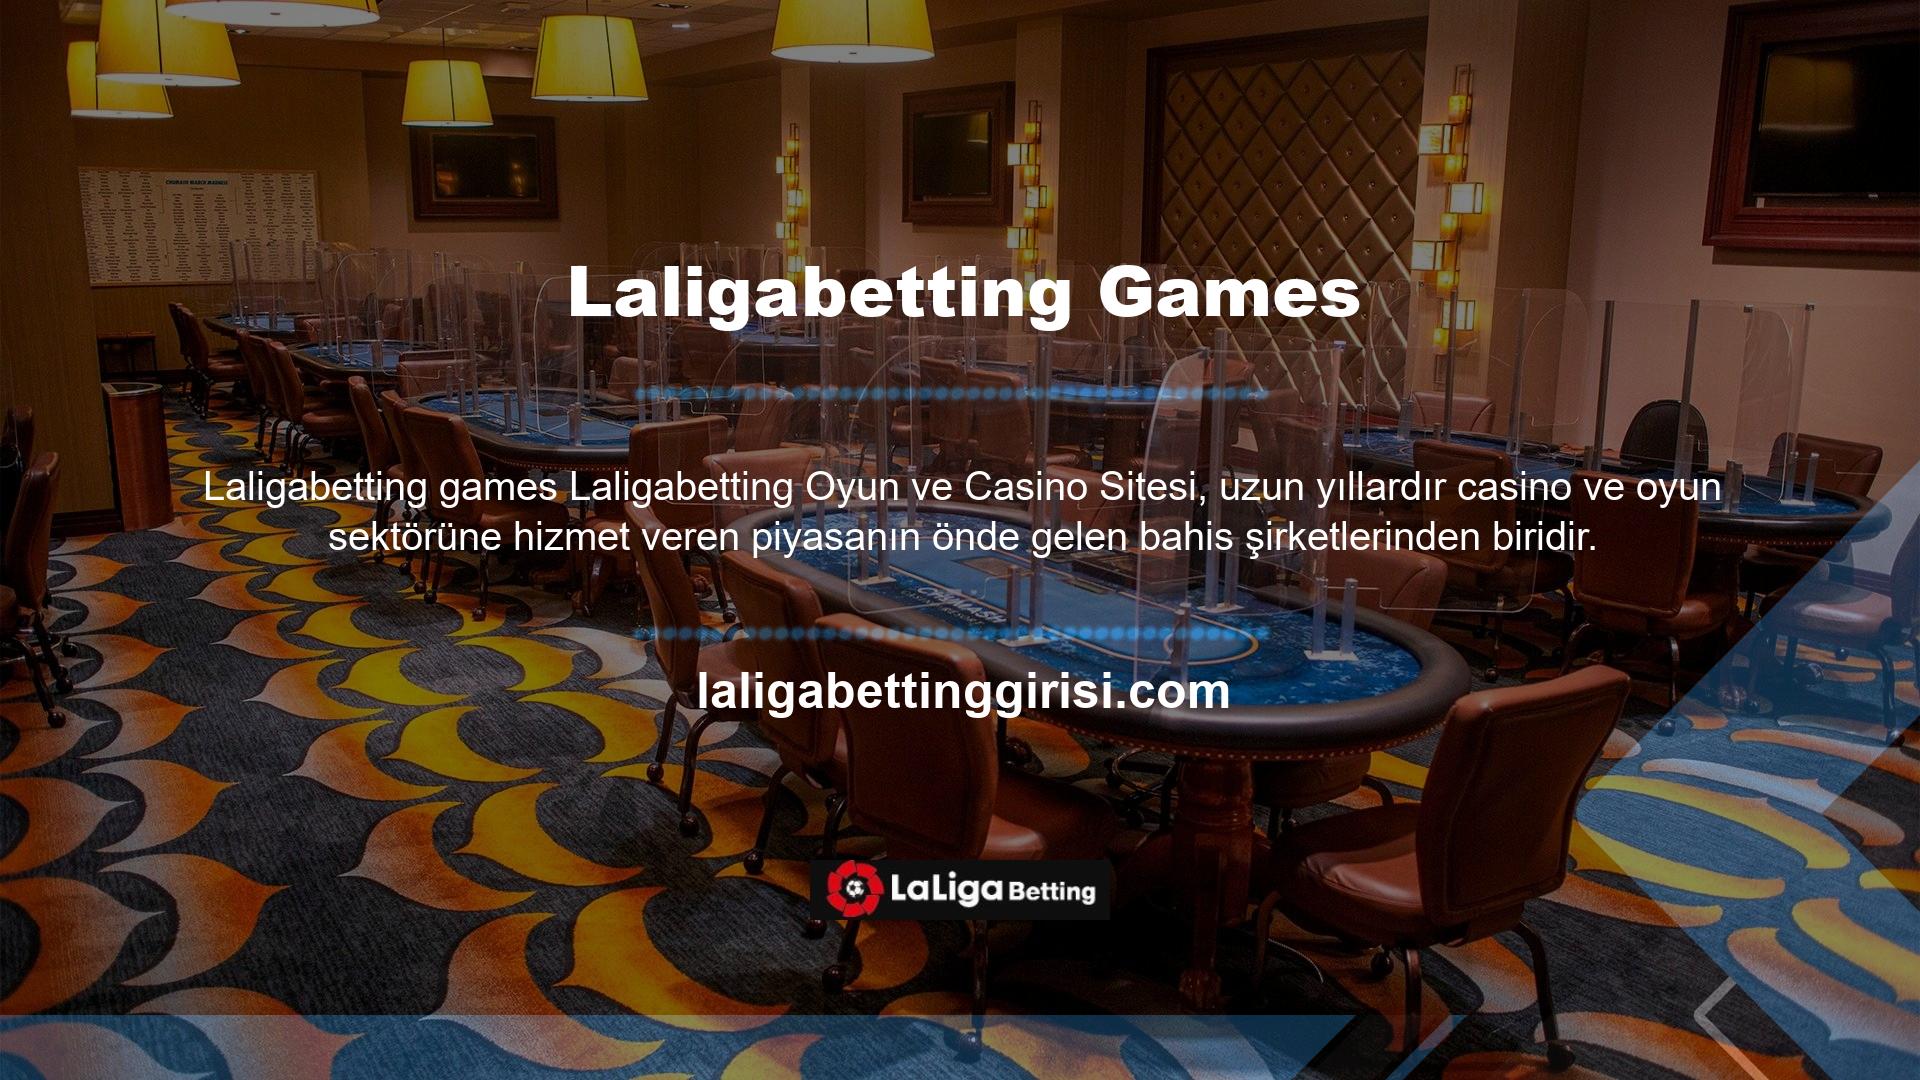 Laligabetting bahis ve casino siteleri spor bahislerinden casino ve poker oyunlarına kadar onlarca farklı bahis çeşidi sunmaktadır